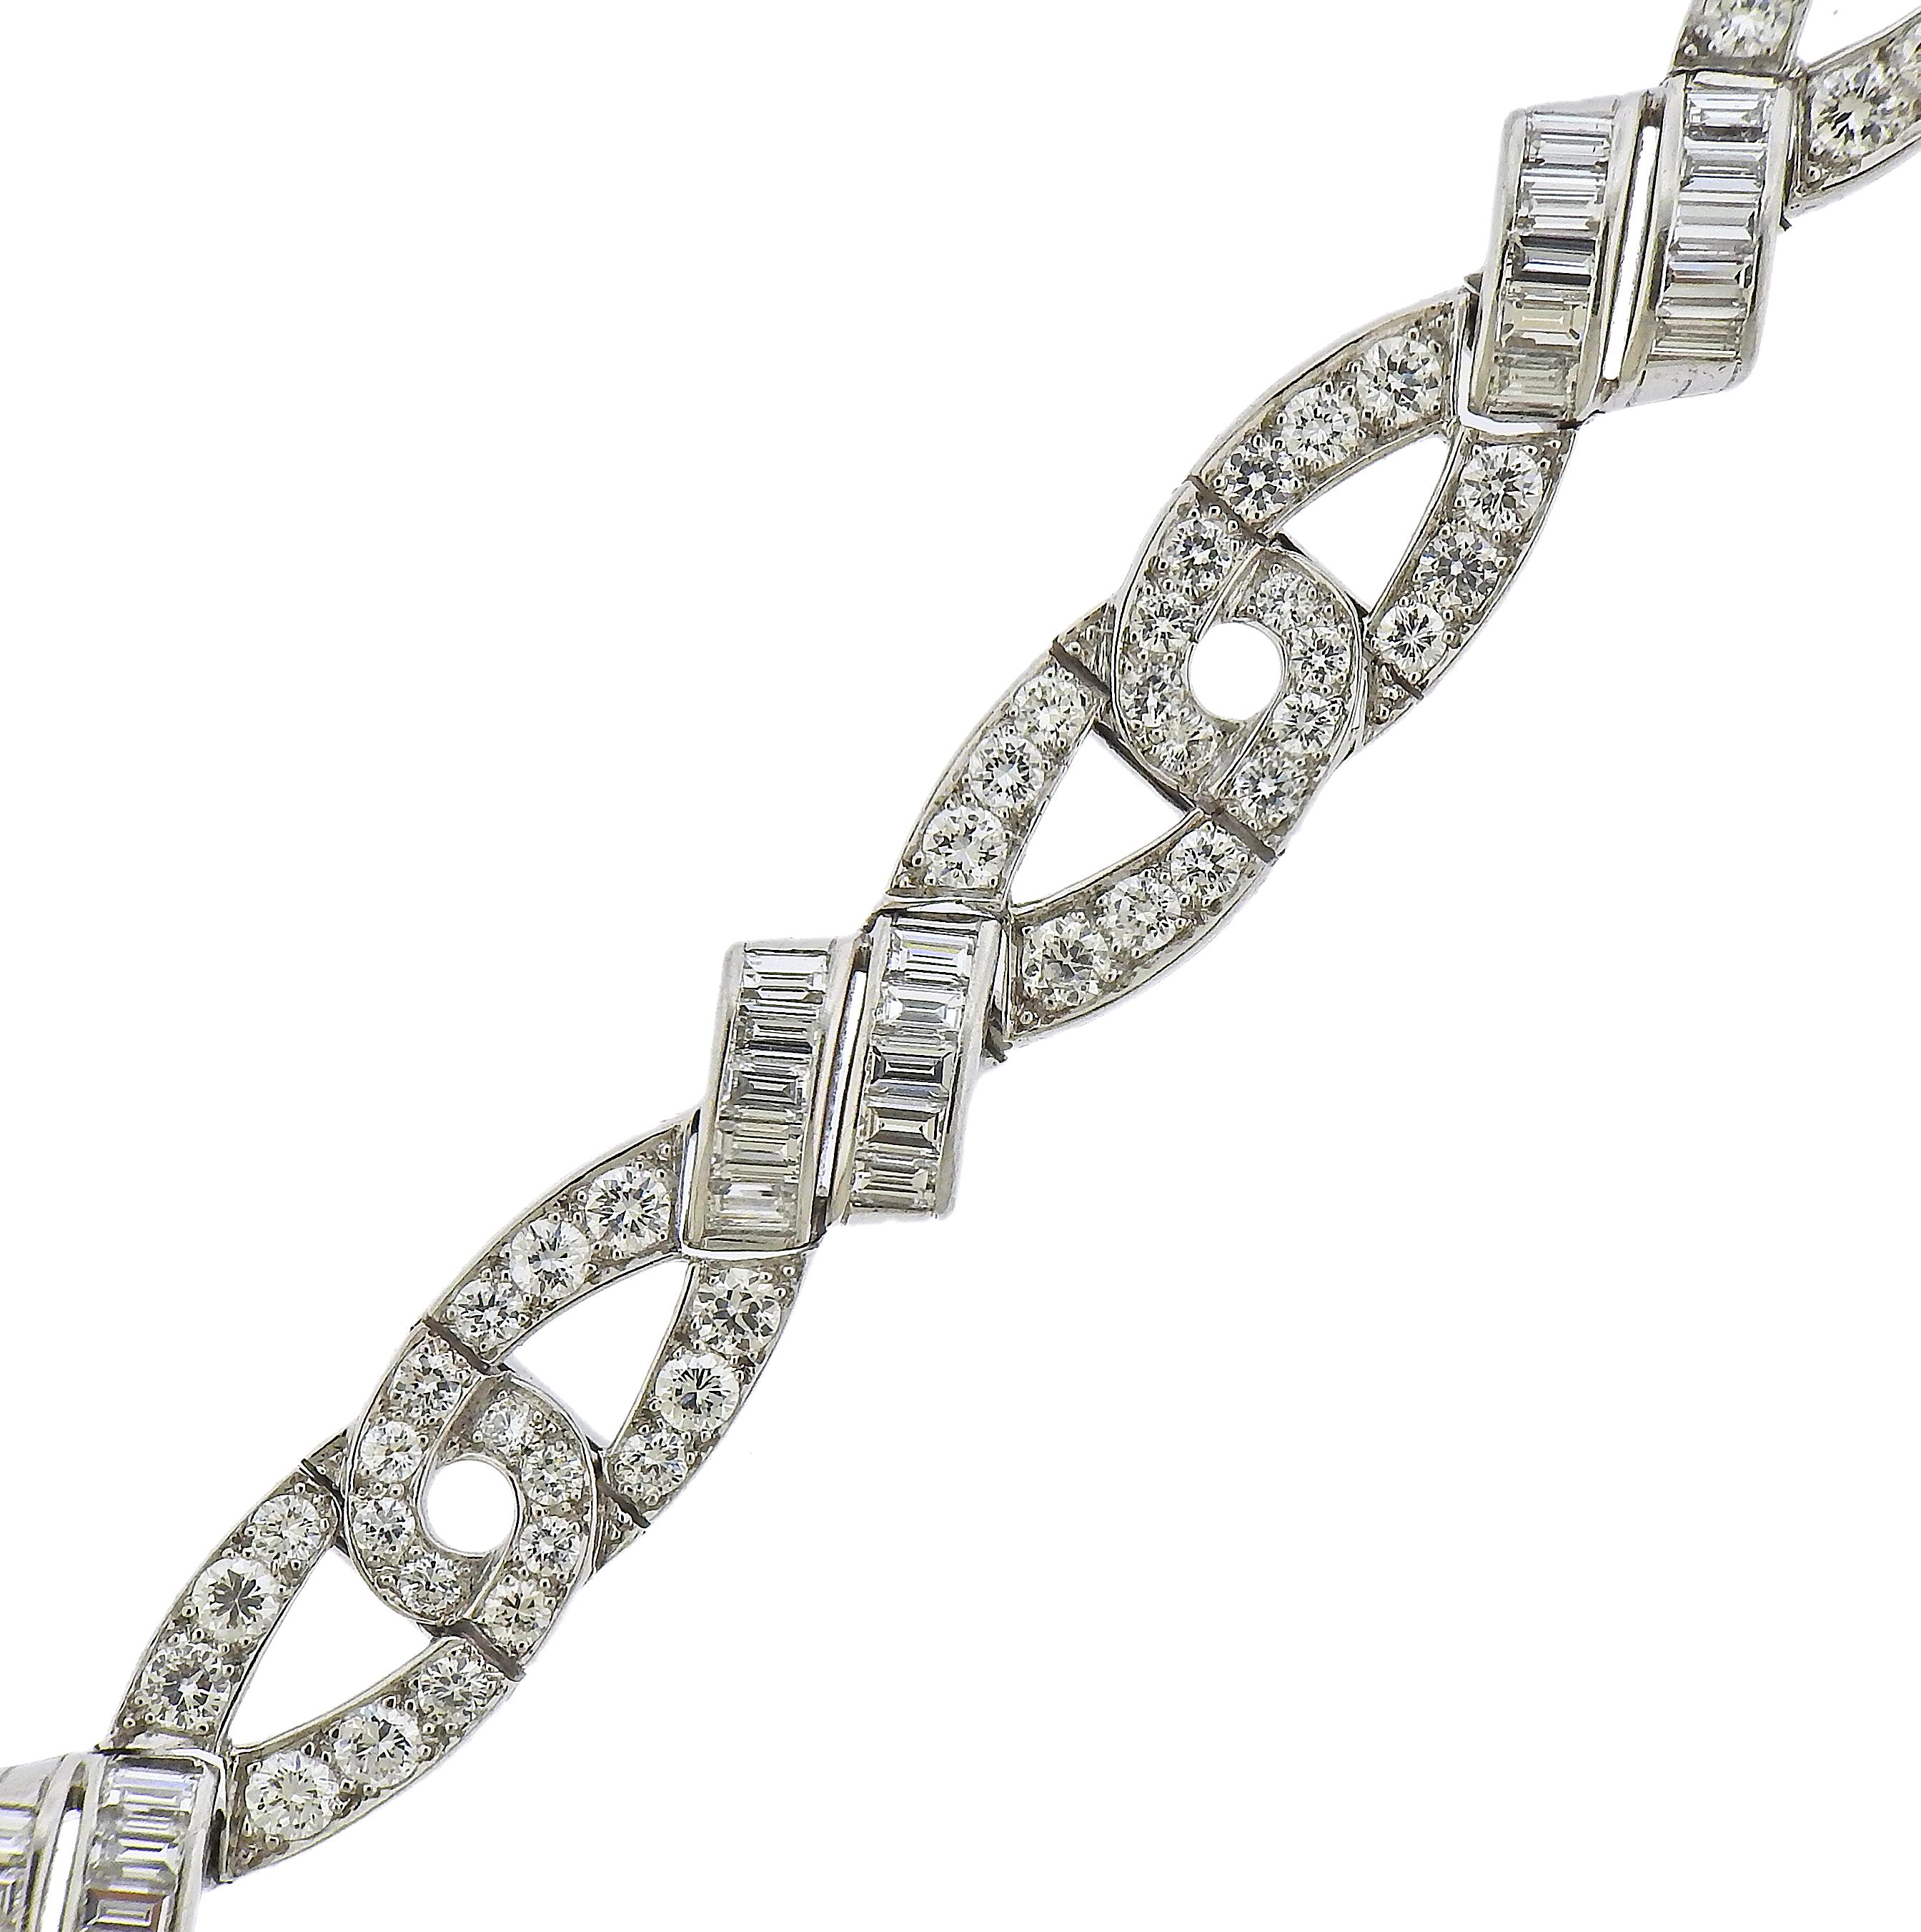 Wunderschönes Platinarmband von Oscar Heyman Bros. besetzt mit Baguette- und runden Diamanten - insgesamt ca. 7 bis 7,50cts. Das Armband ist 7,25